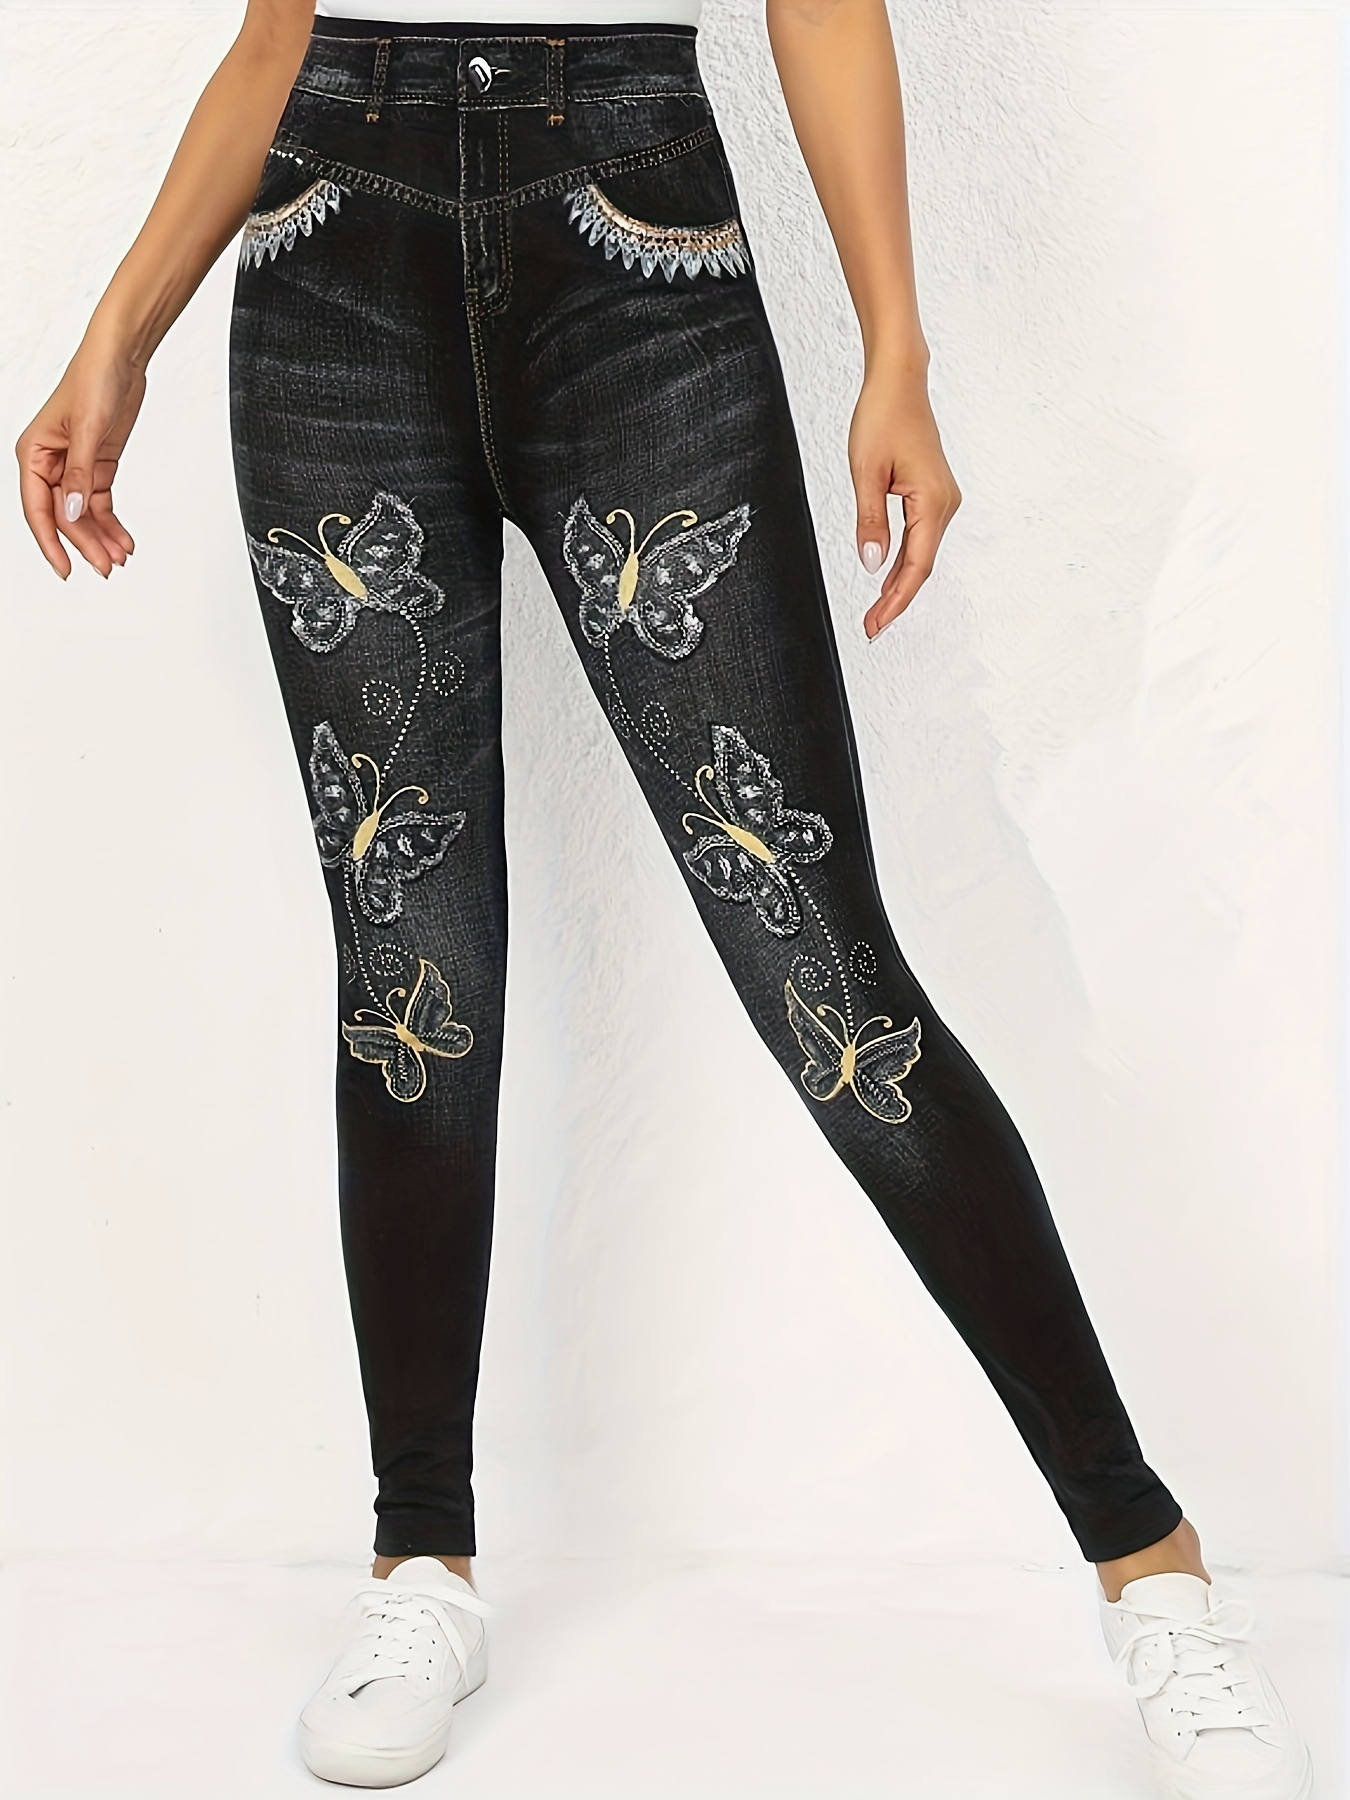 EHQJNJ Gym Leggings Yoga Pants Plus Size Women's Butterfly Print